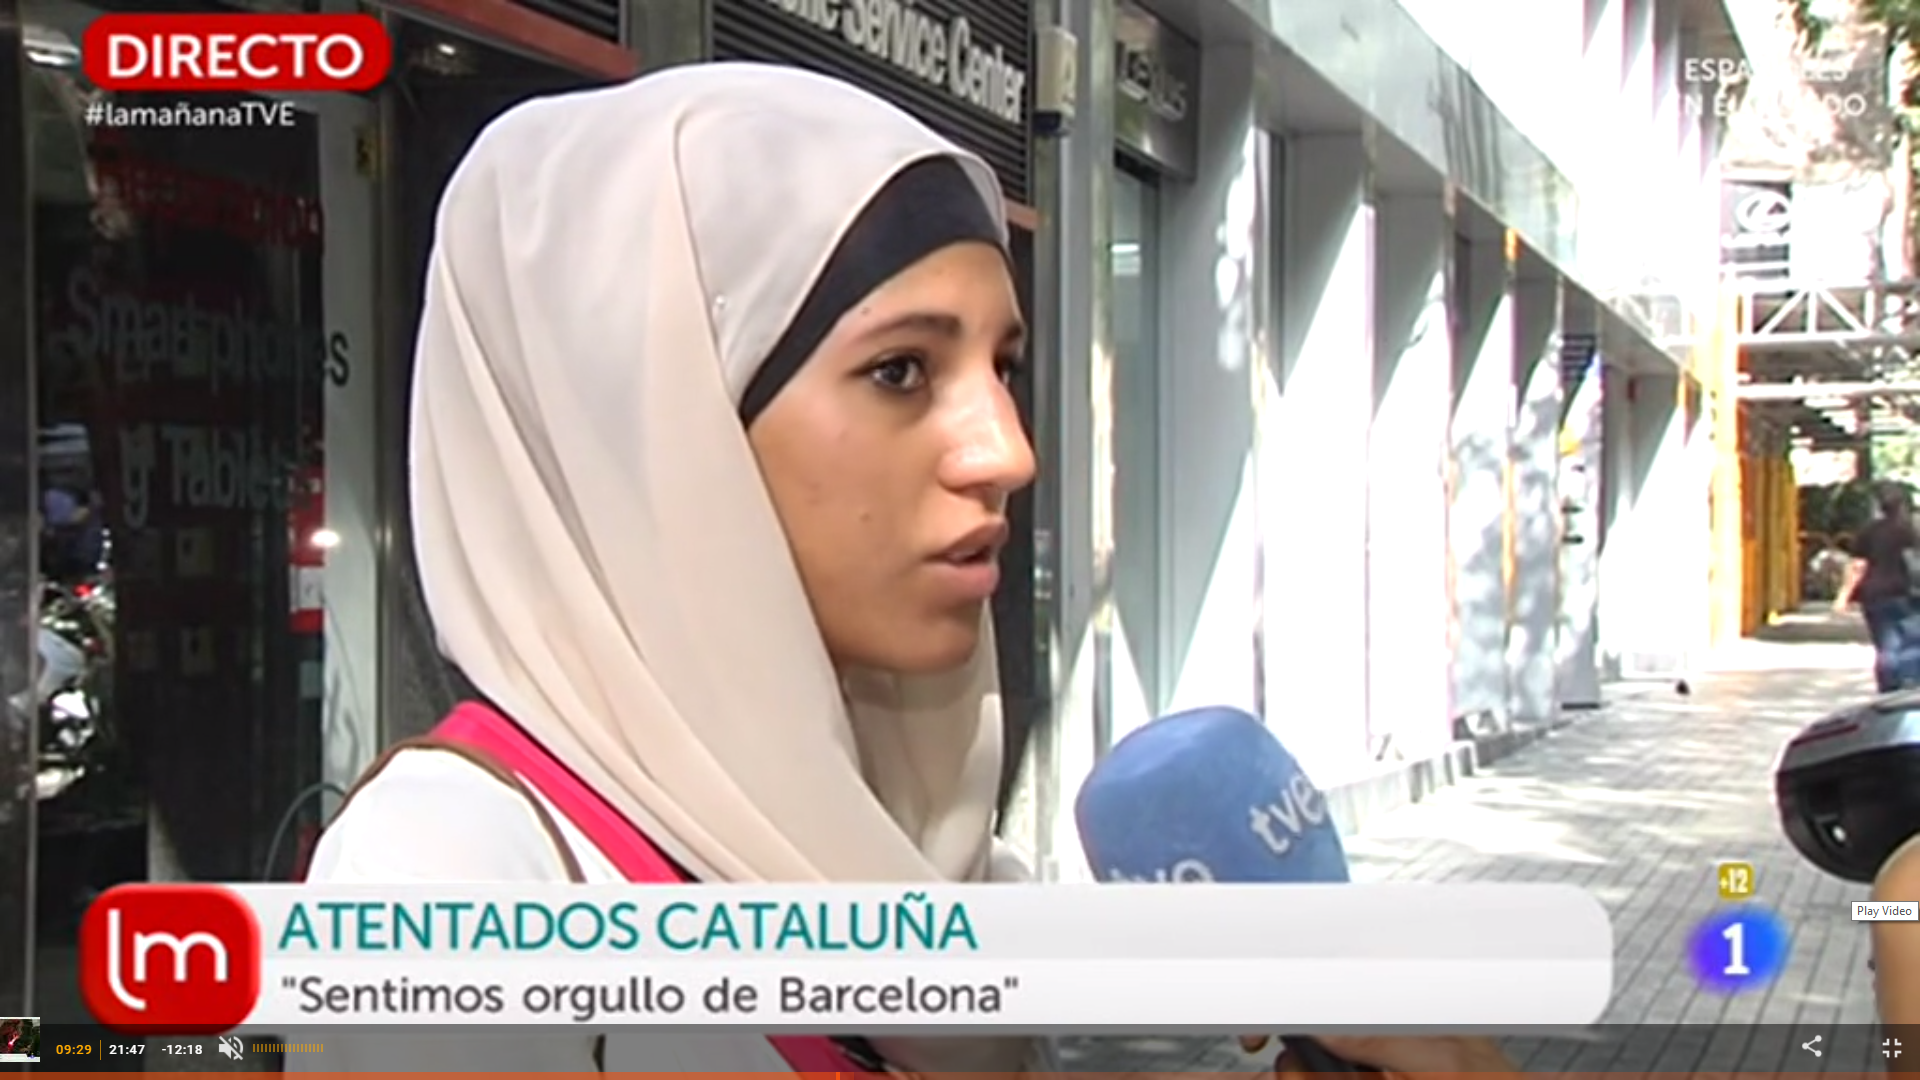 TVE, criticada por una entrevista "racista" a una mujer musulmana